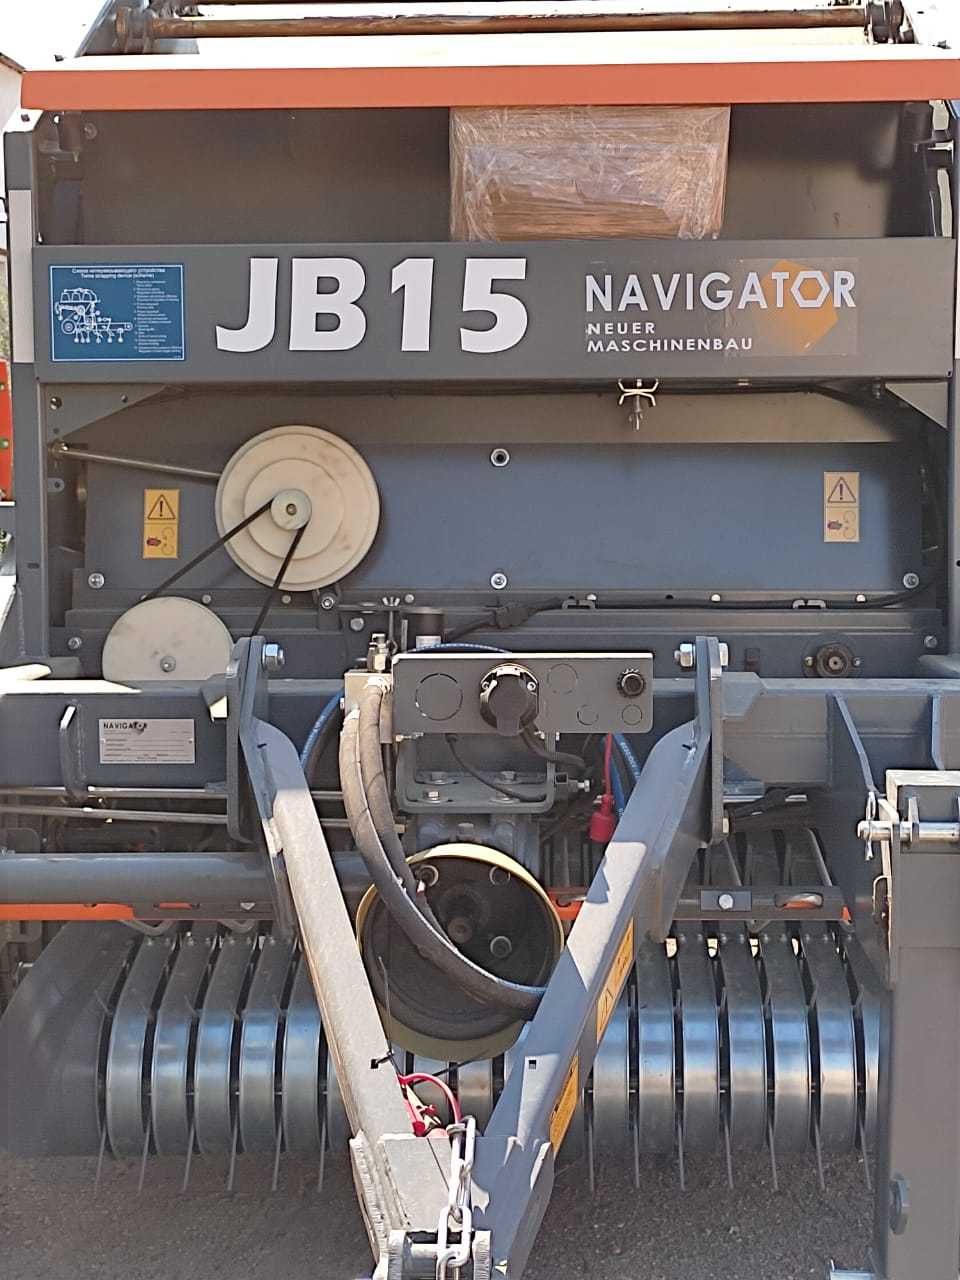 Пресс подборщик Навигатор - JB12, JB15 (В СУБСИДИРУЕТСЯ)